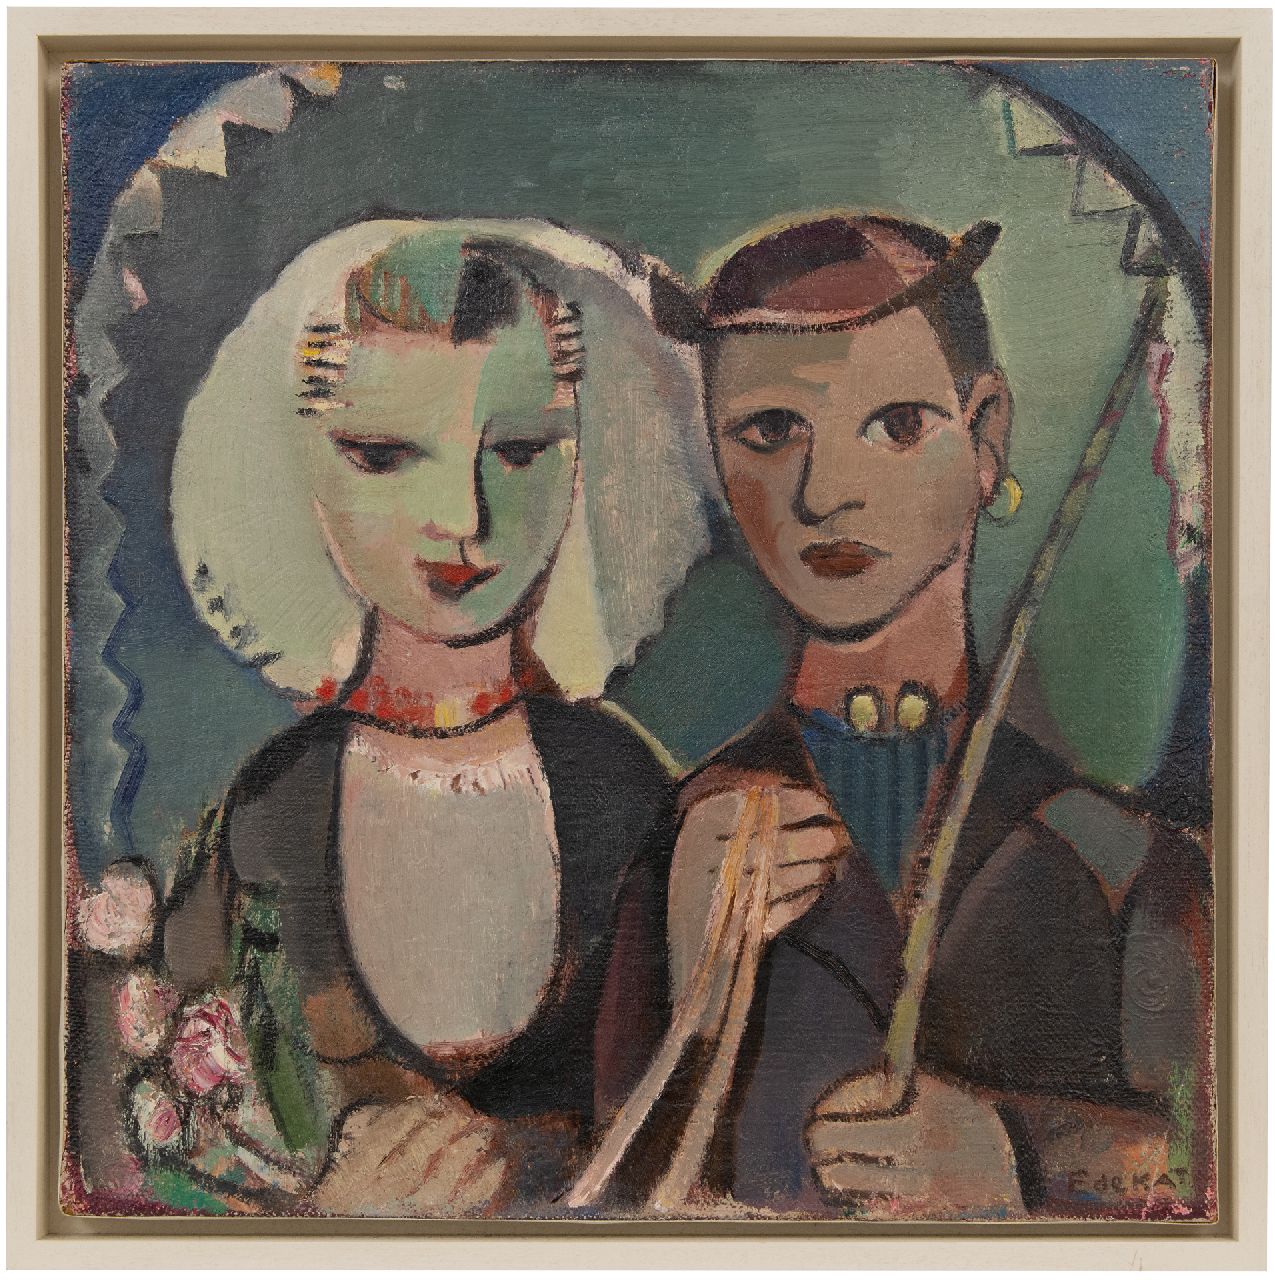 Kat E. de | Ewoud de Kat | Schilderijen te koop aangeboden | Bruiloftskoppel in Zeeuwse dracht, olieverf op doek 60,3 x 60,6 cm, gesigneerd rechtsonder